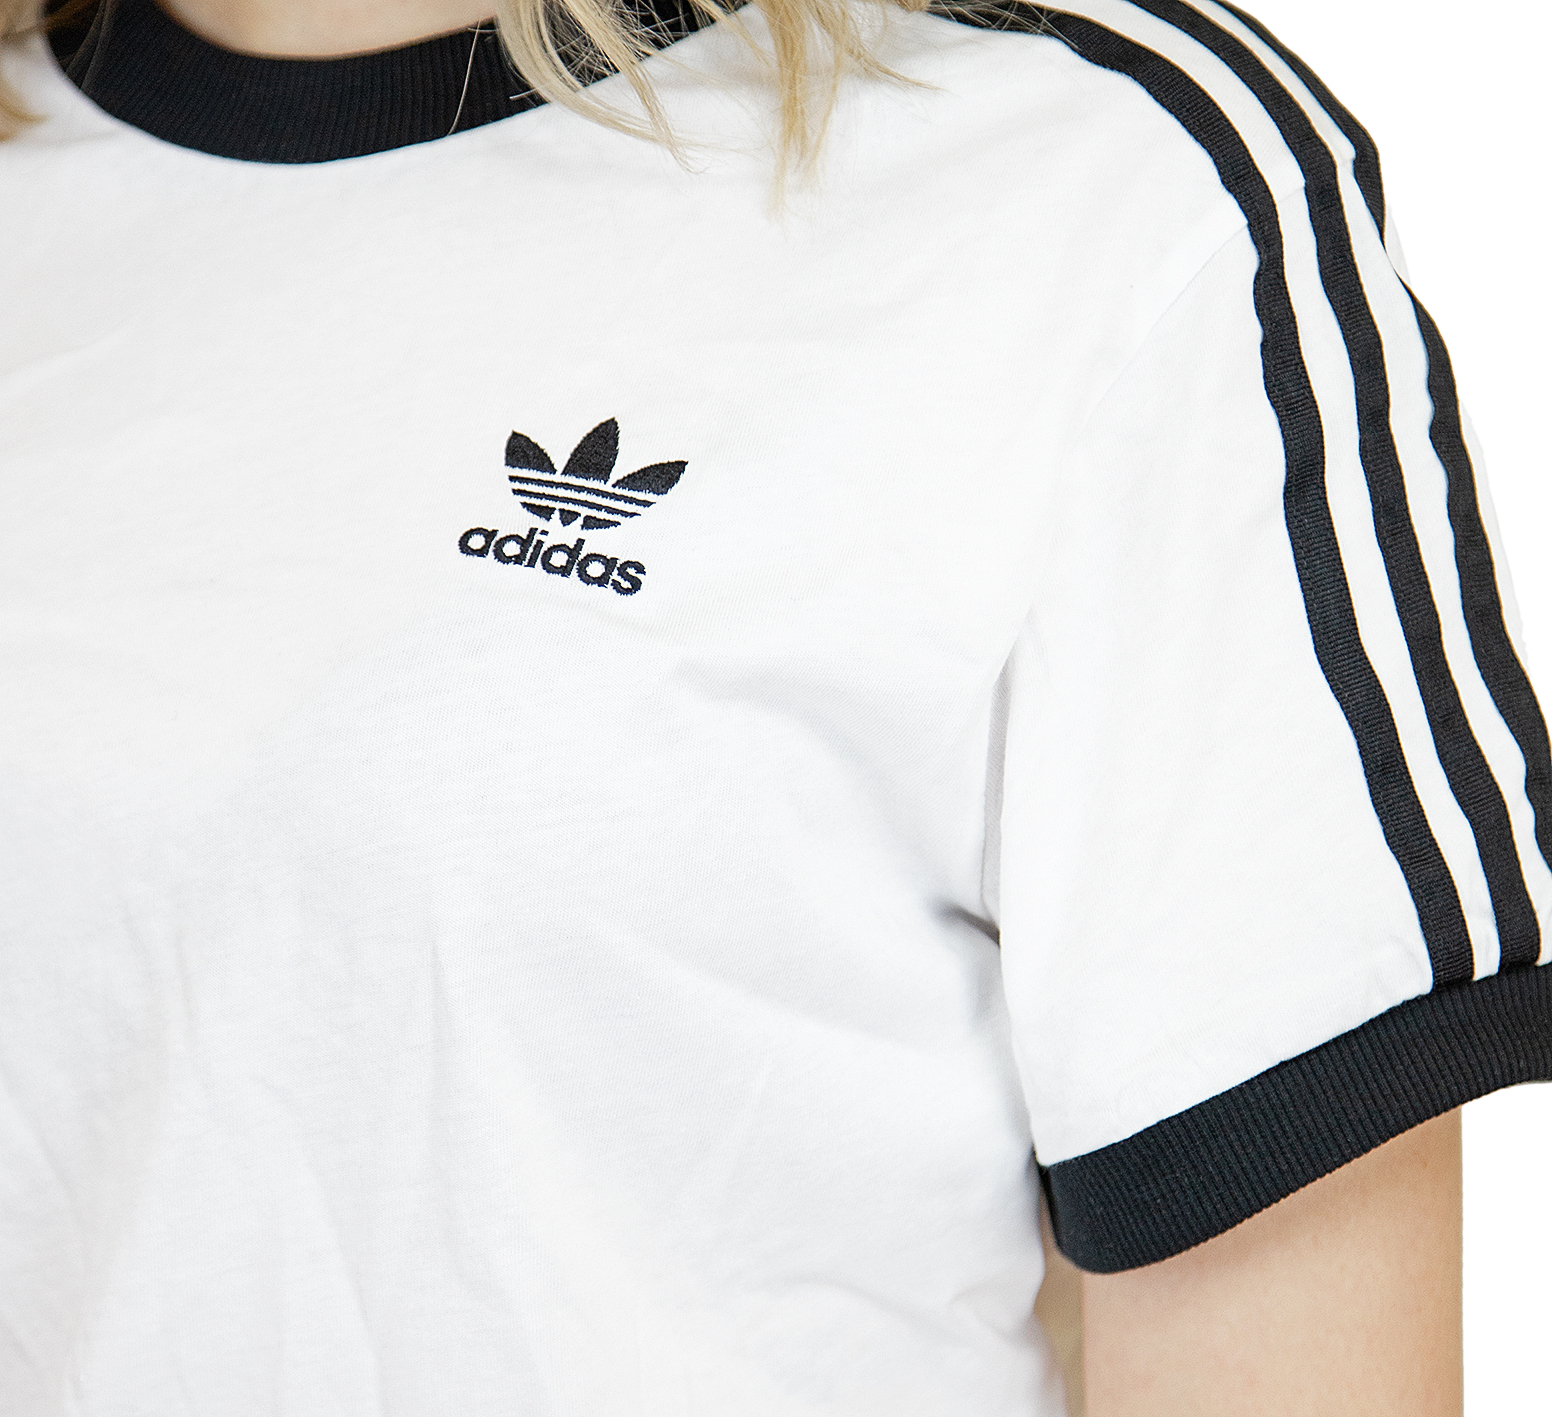 ☆ Adidas Originals Damen T-Shirt 3 Stripes weiß/schwarz - hier bestellen!